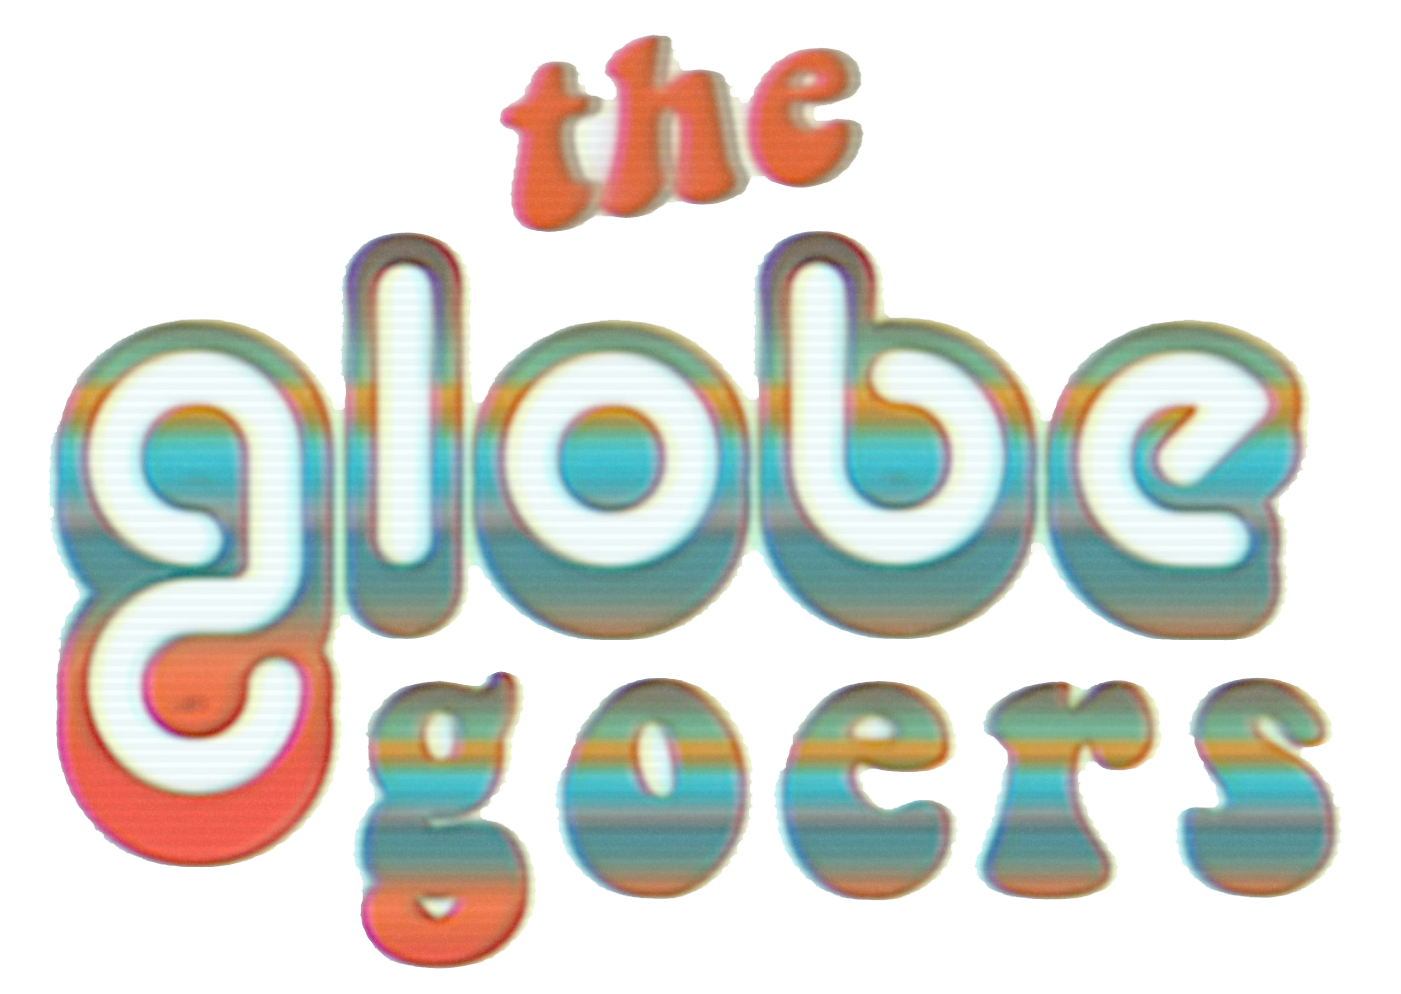 The GlobeGoers